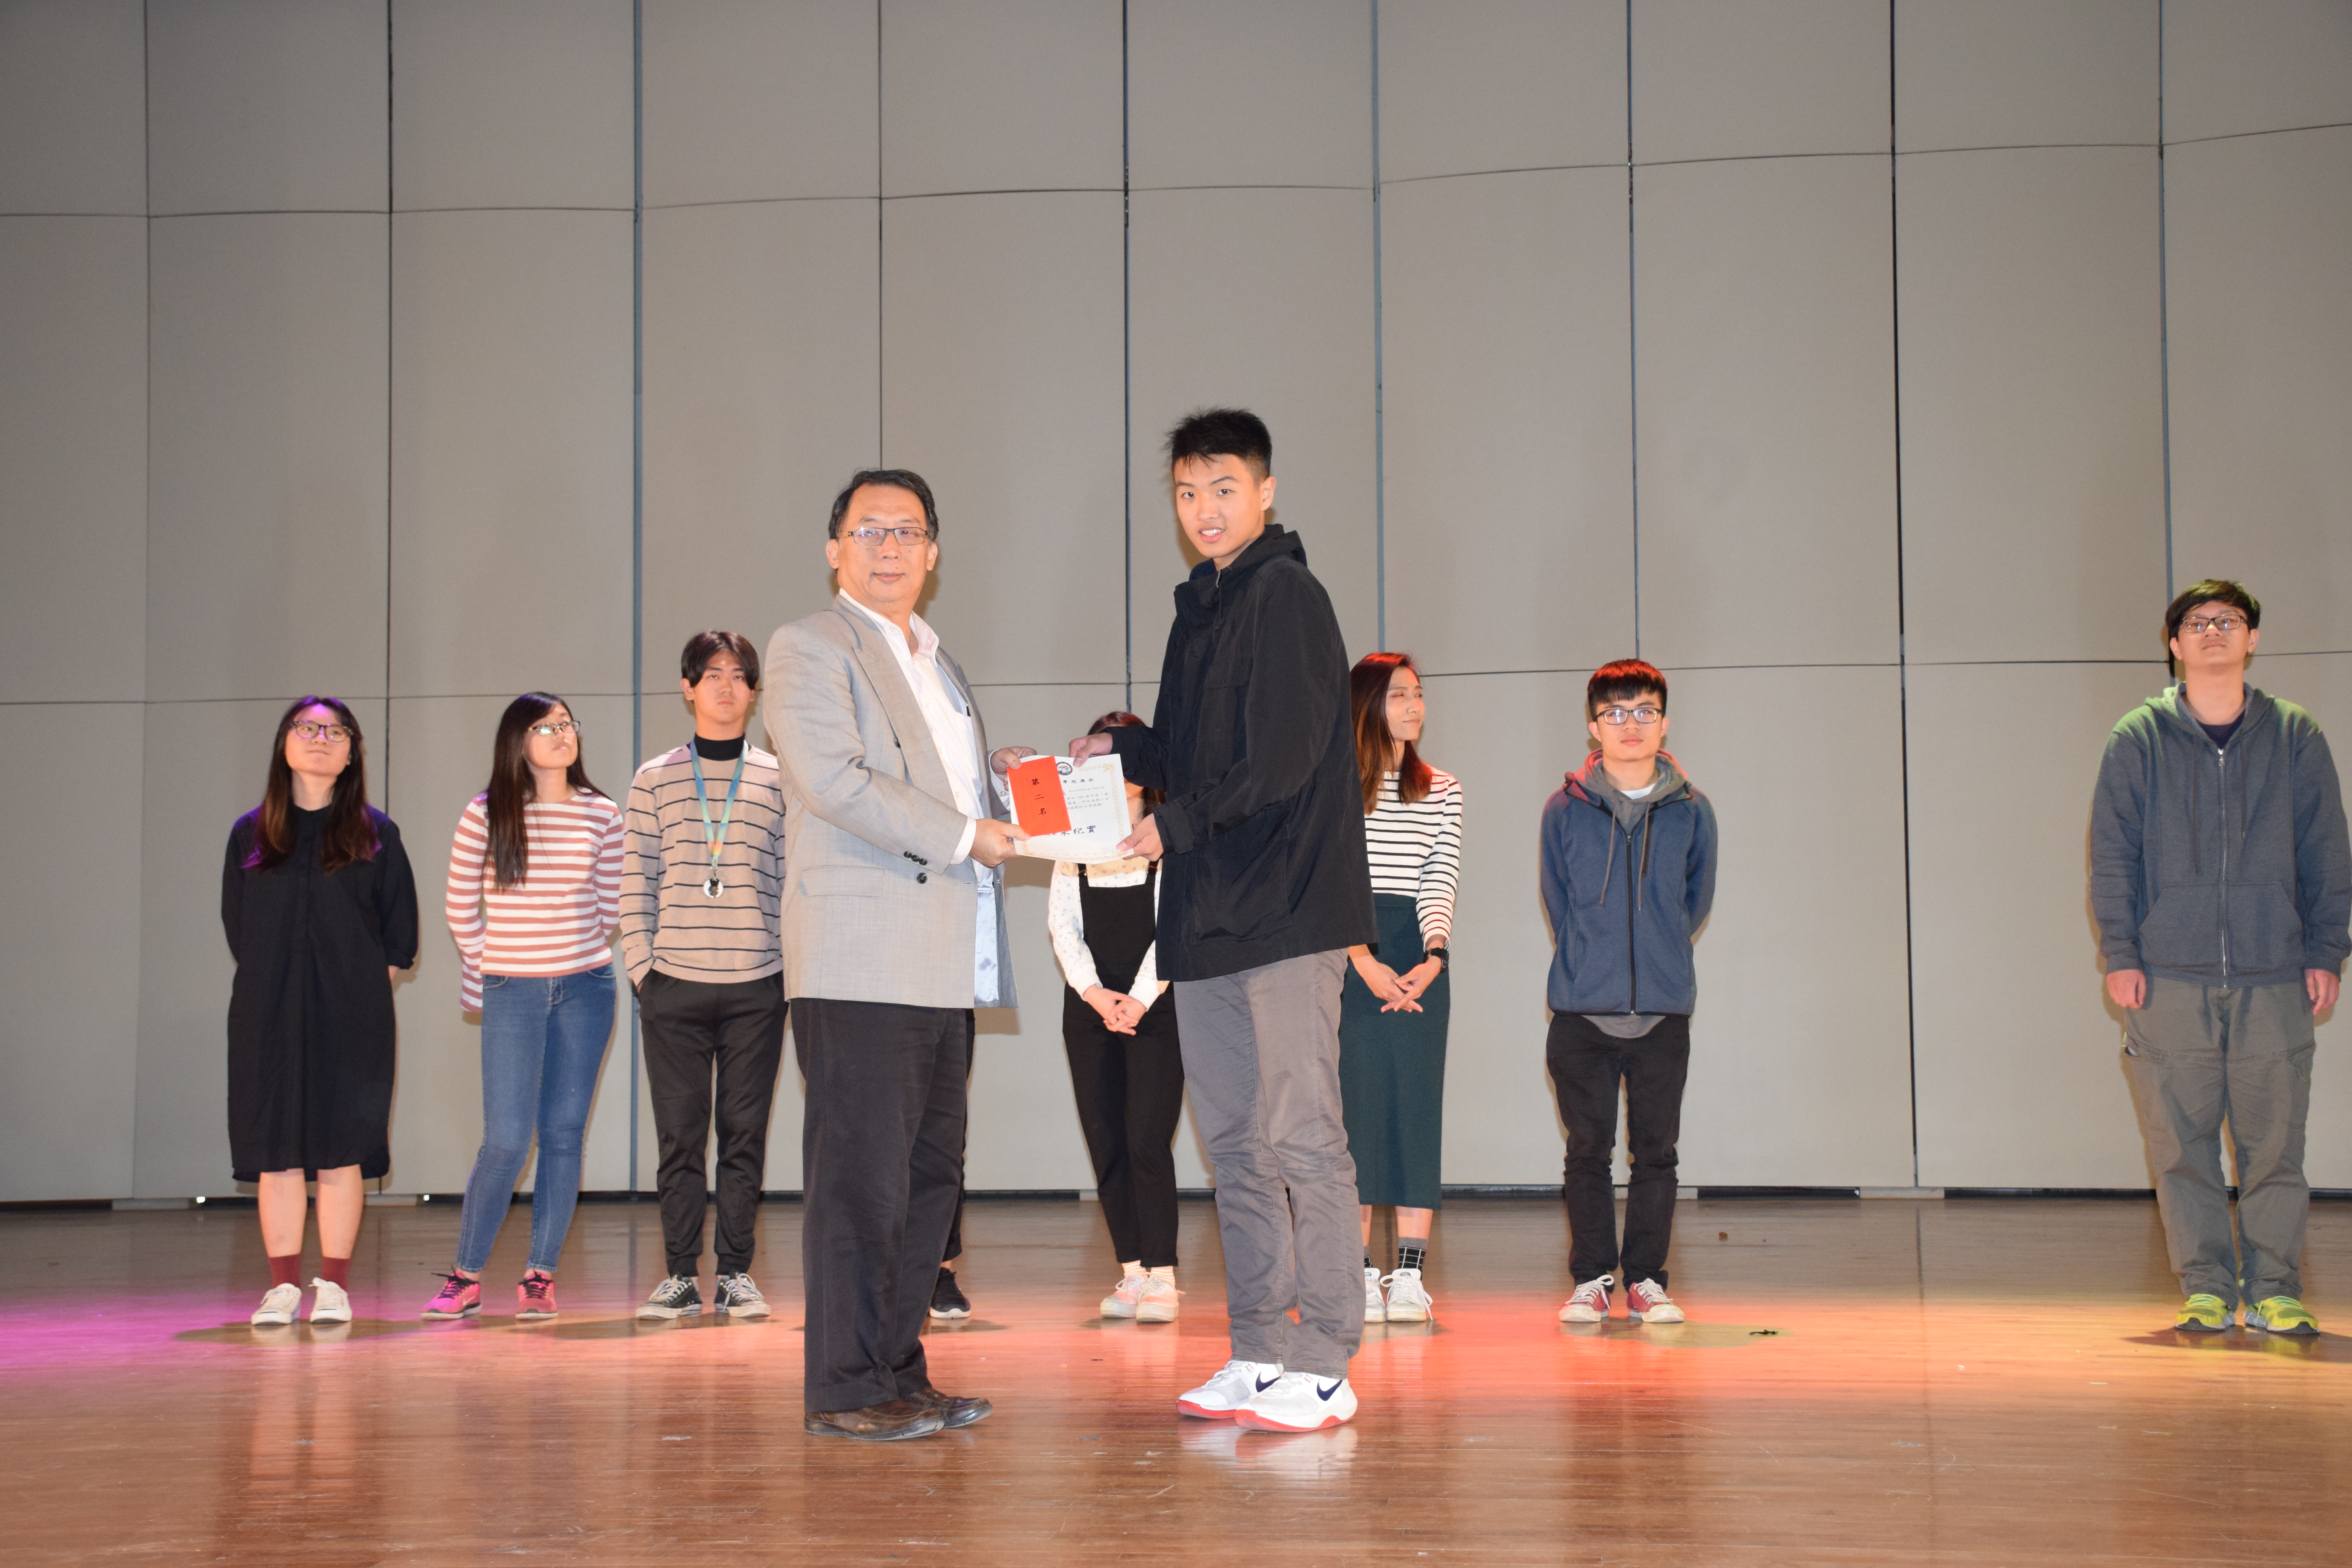 卡拉OK競賽第二名陳宇成同學院長頒發獎狀及獎金